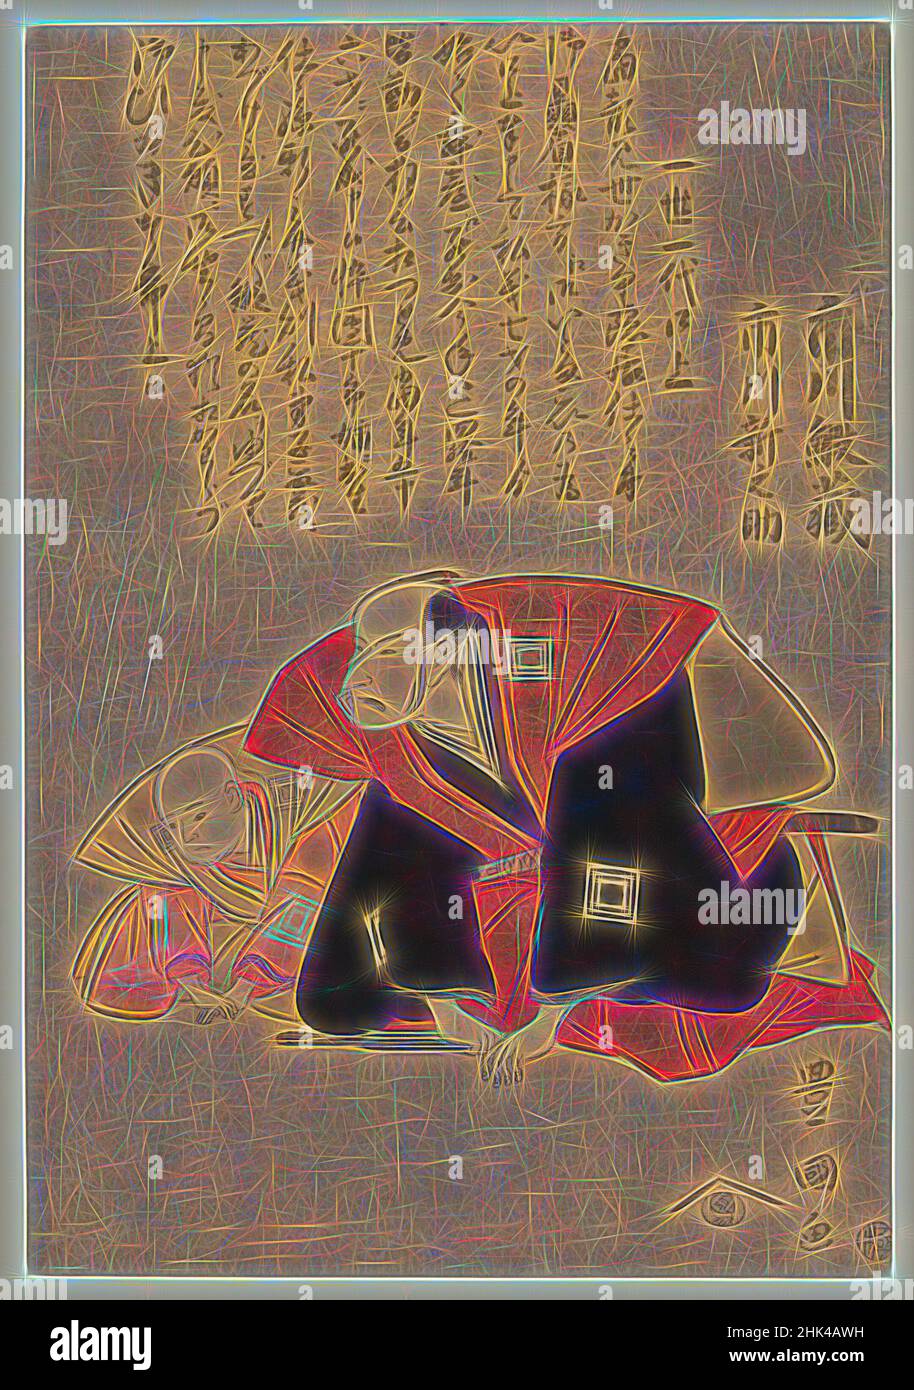 Inspiré par les acteurs, Ichikawa Ebizo III et Ichikawa Shinnosuke, Utagawa Toyokuni I, japonais, 1769-1825, impression couleur Woodblock, Japon, env. 1798, période Edo, 12 3/16 x 8 7/16 po., 31 x 21,4 cm, réimaginé par Artotop. L'art classique réinventé avec une touche moderne. Conception de lumière chaleureuse et gaie, de luminosité et de rayonnement de lumière. La photographie s'inspire du surréalisme et du futurisme, embrassant l'énergie dynamique de la technologie moderne, du mouvement, de la vitesse et révolutionne la culture Banque D'Images